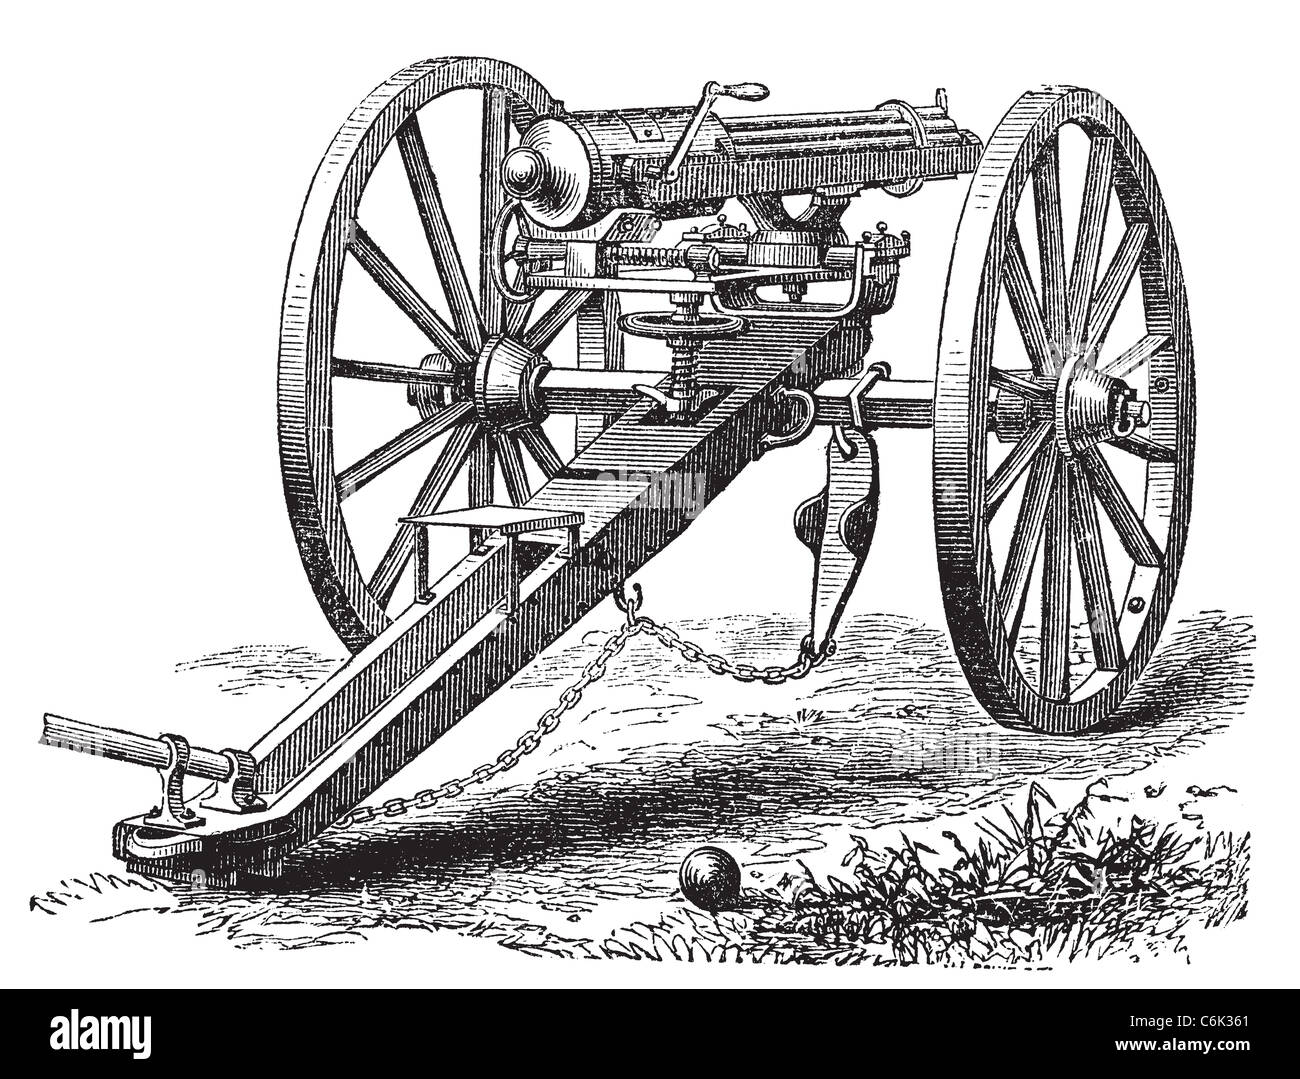 Galting gun vintage engraving. Old engraved illustration of a Galting gun. Gatling gun was designed by Dr. Richard J. Gatling. Stock Photo